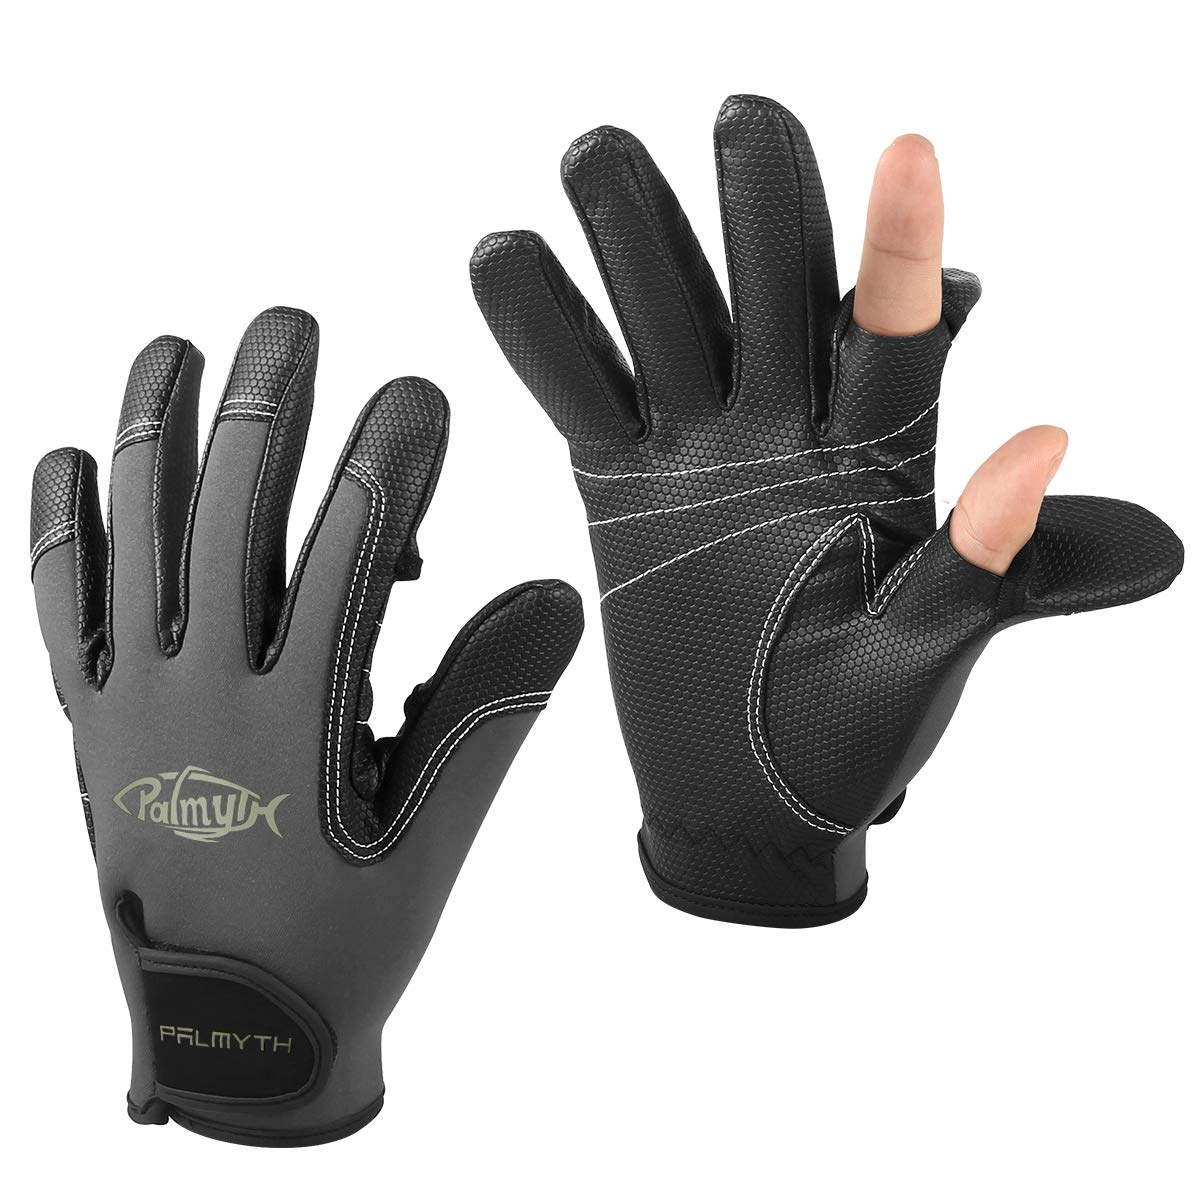 Palmyth Neoprene Fishing Gloves for Men and Women 2 Cut Fingers